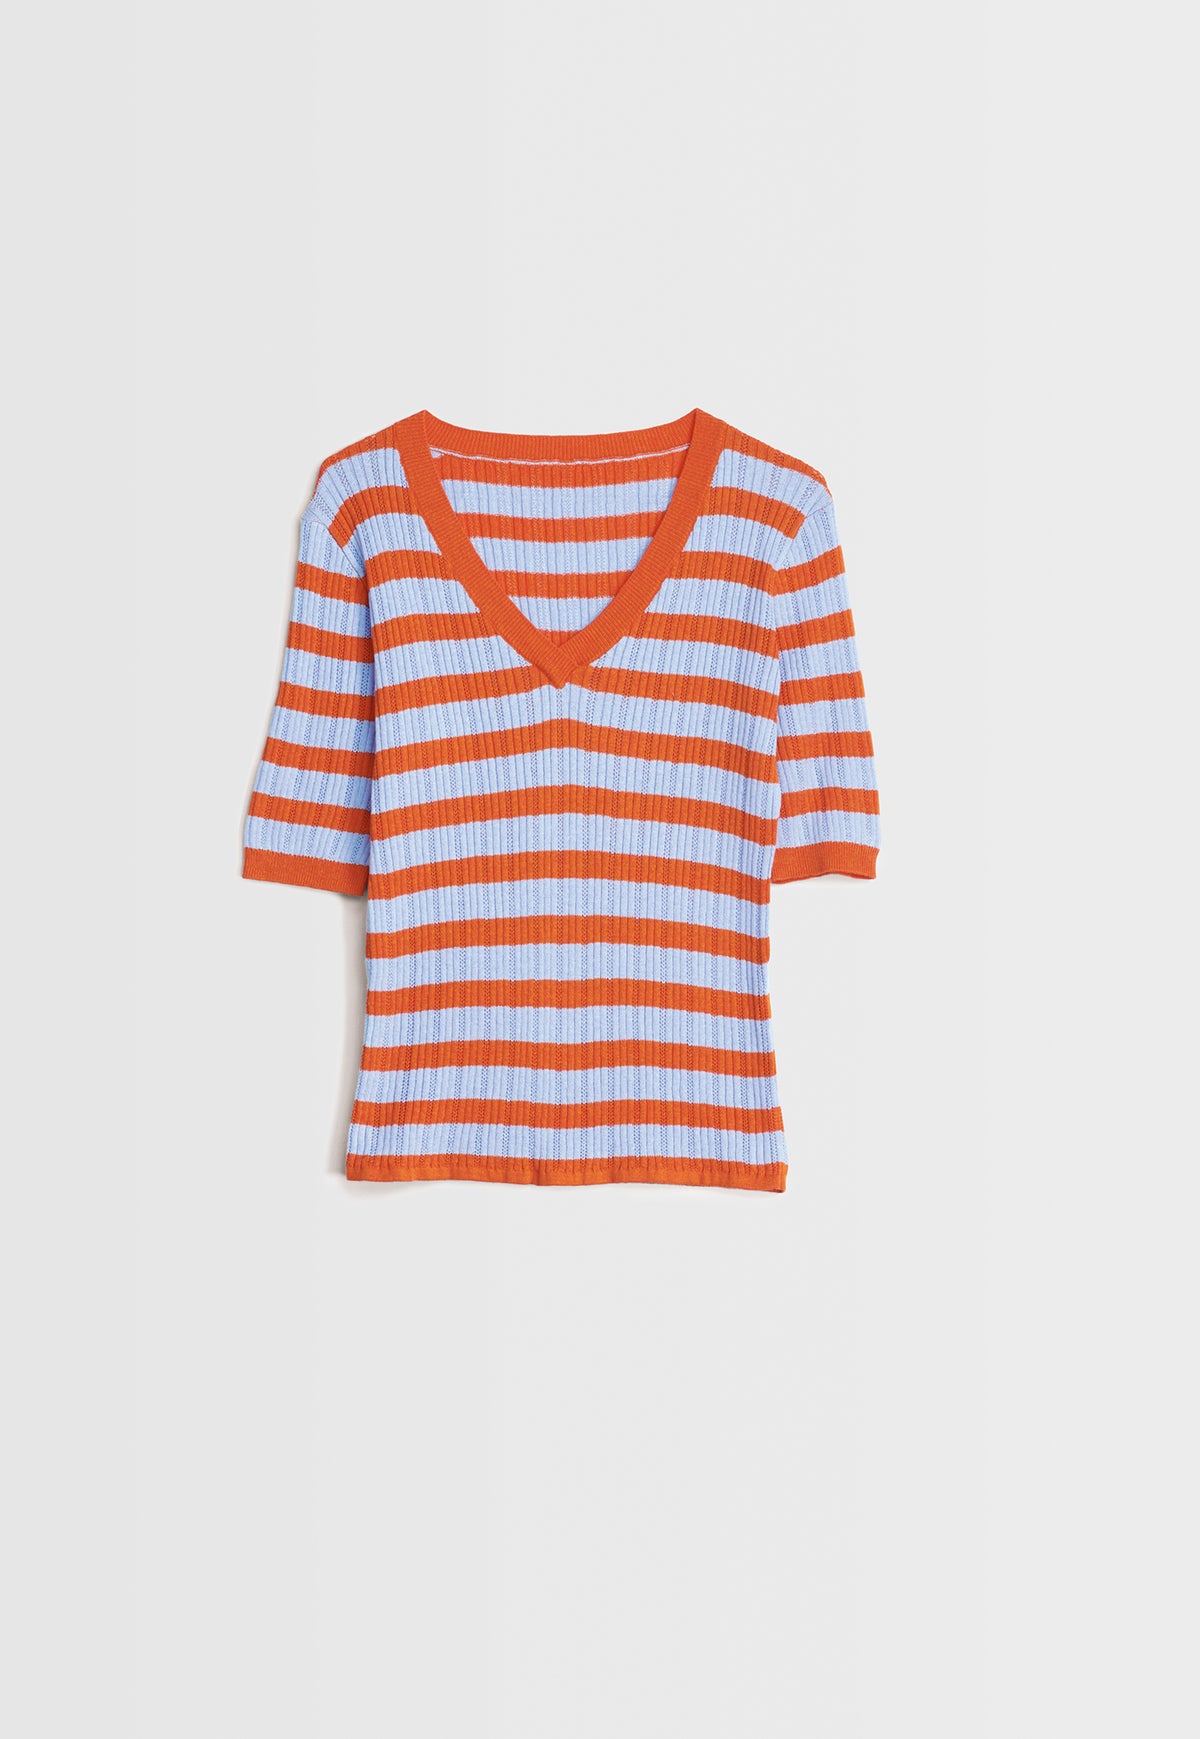 Pixel Knit - Coral Stripe